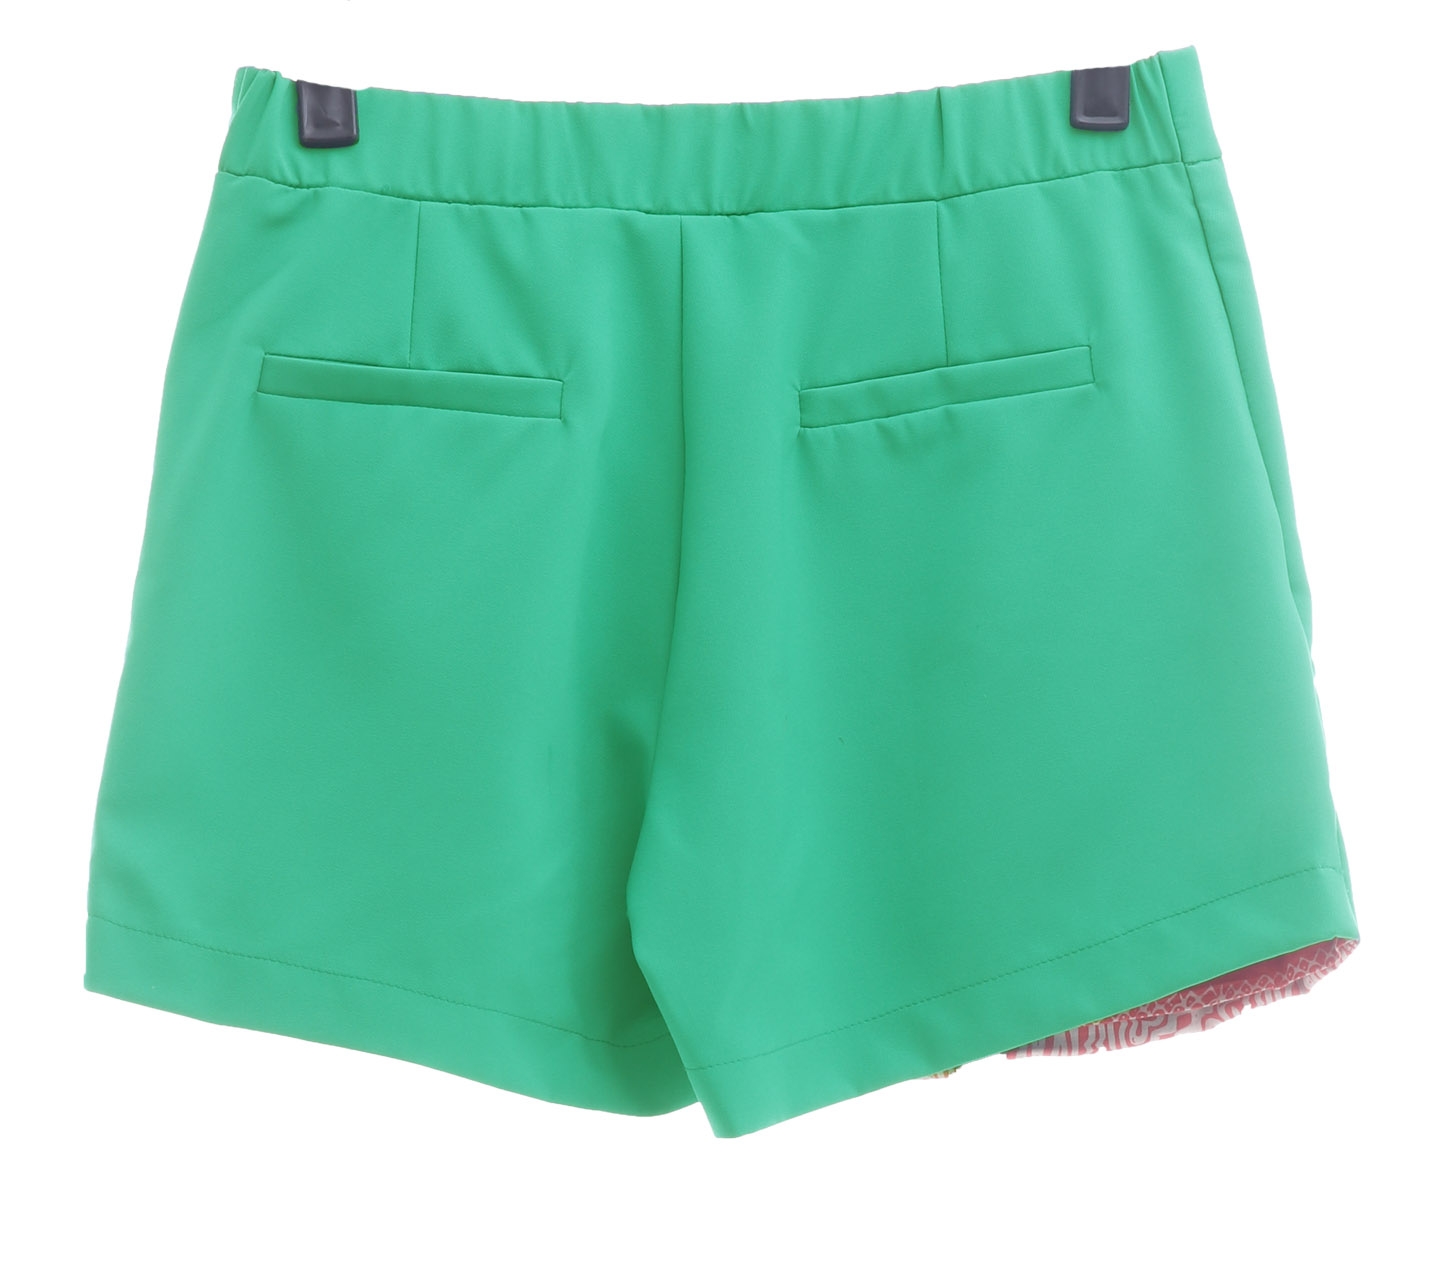 Ree Green Skort Short Pants